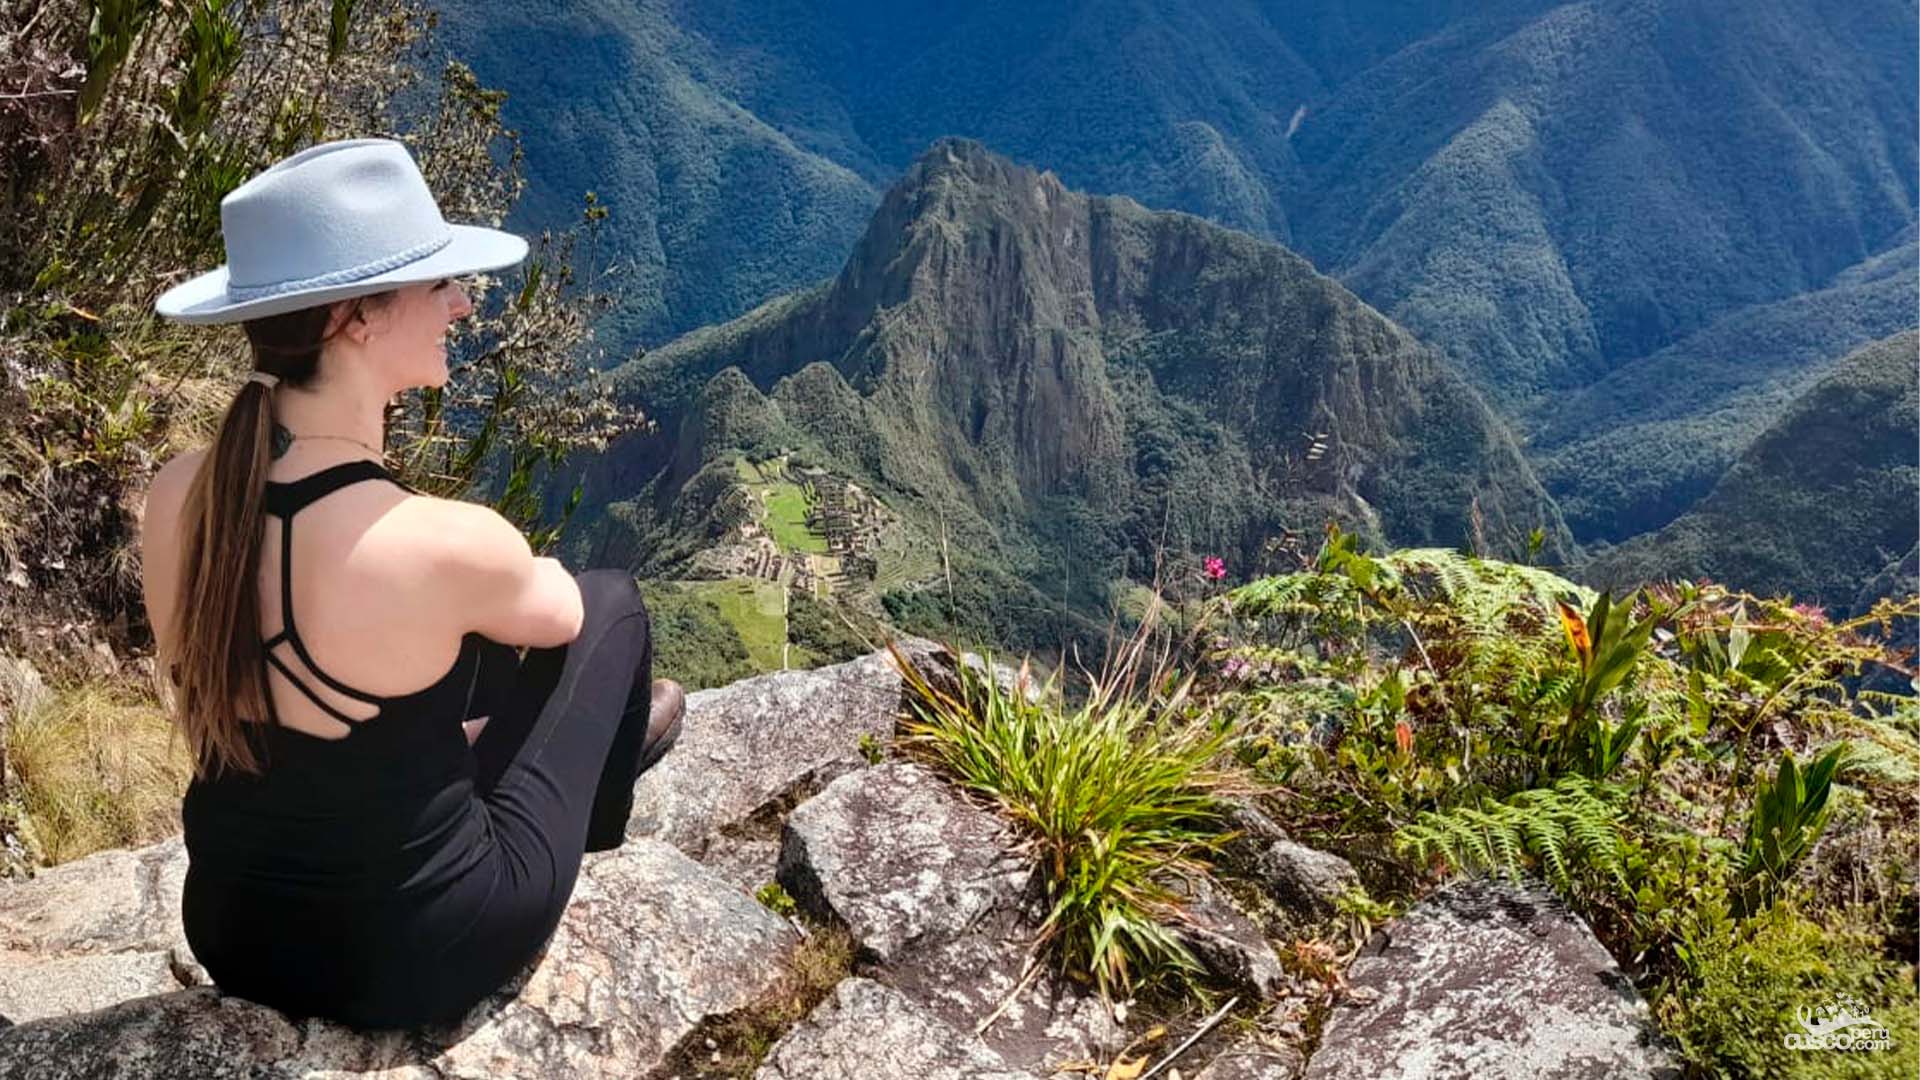 View of Machu Picchu from the summit of Machu Picchu Mountain. Source: CuscoPeru.com